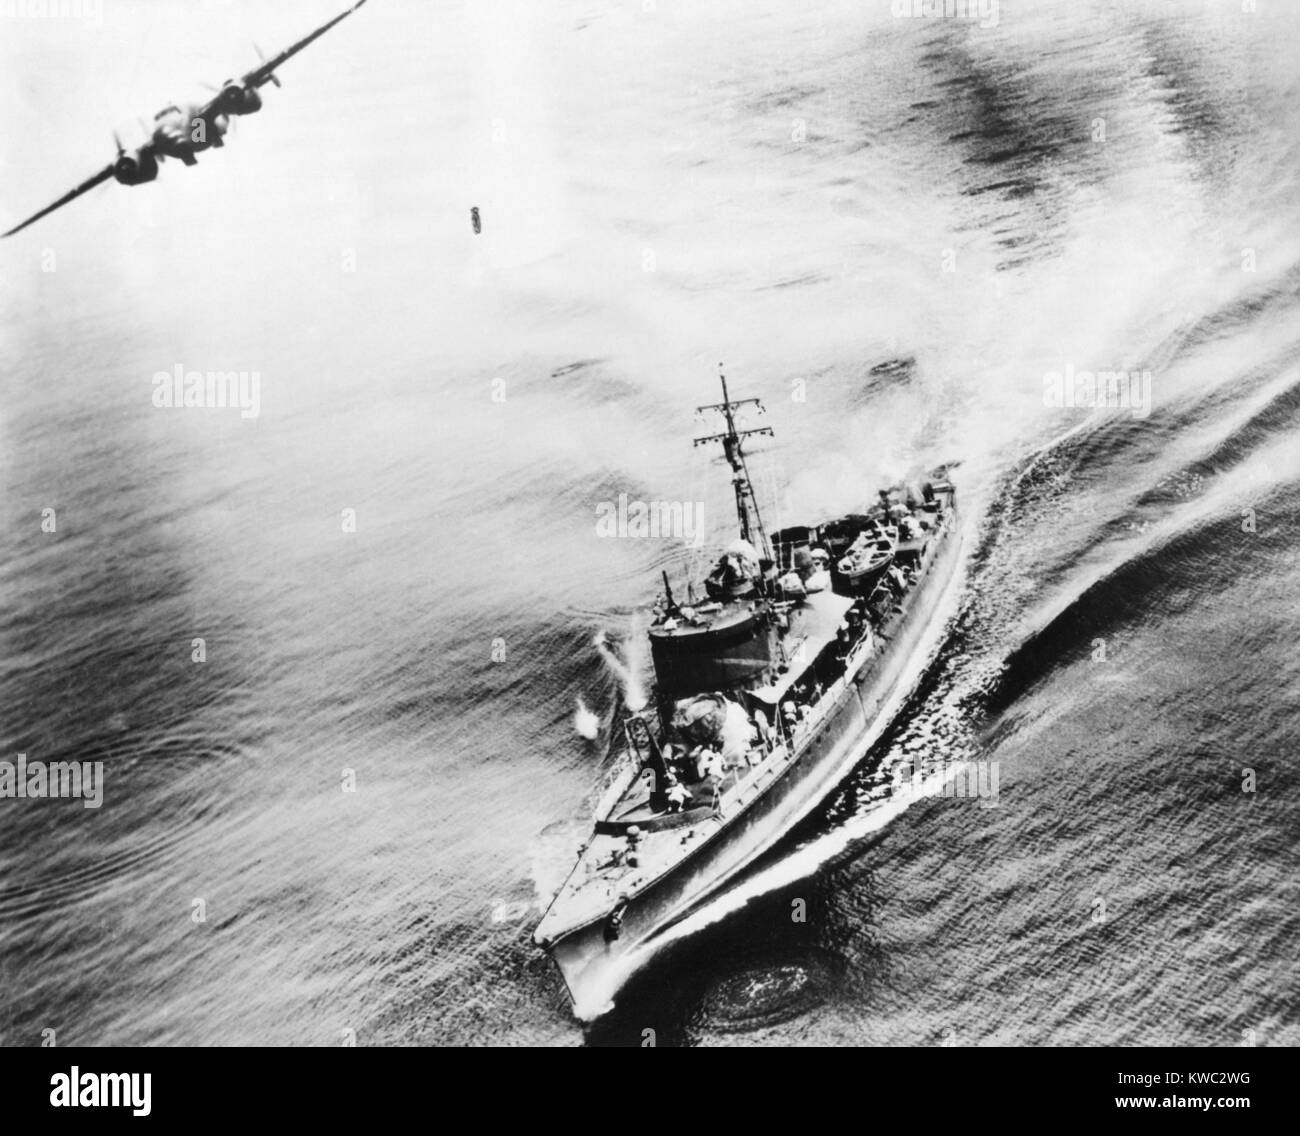 Kleine japanische Krieg Schiff durch US-amerikanische B-25 Bomber in der Bismarck Sea, 21. März 1944 bombardiert. Die Schiffe crew gesehen laufen für die Abdeckung. Das Schiff wurde durch den Angriff in der Nähe von neuen Irland versenkt. Weltkrieg 2 (BSLOC 2015 13 121) Stockfoto